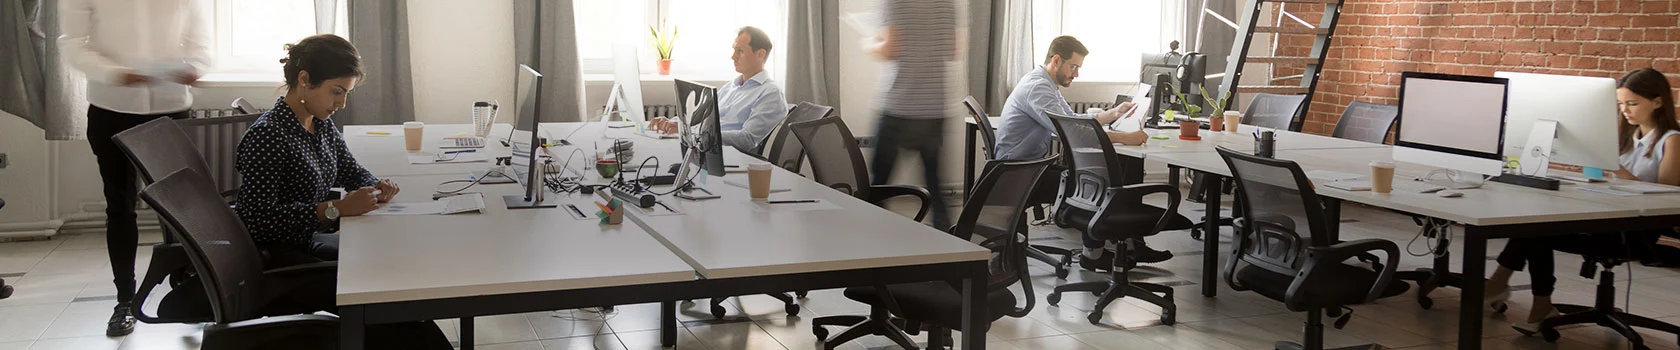 Desk Sharing - mit der richtigen Einrichtung zum flexiblen Büro - Desk Sharing - mit der richtigen Einrichtung zum flexiblen Büro